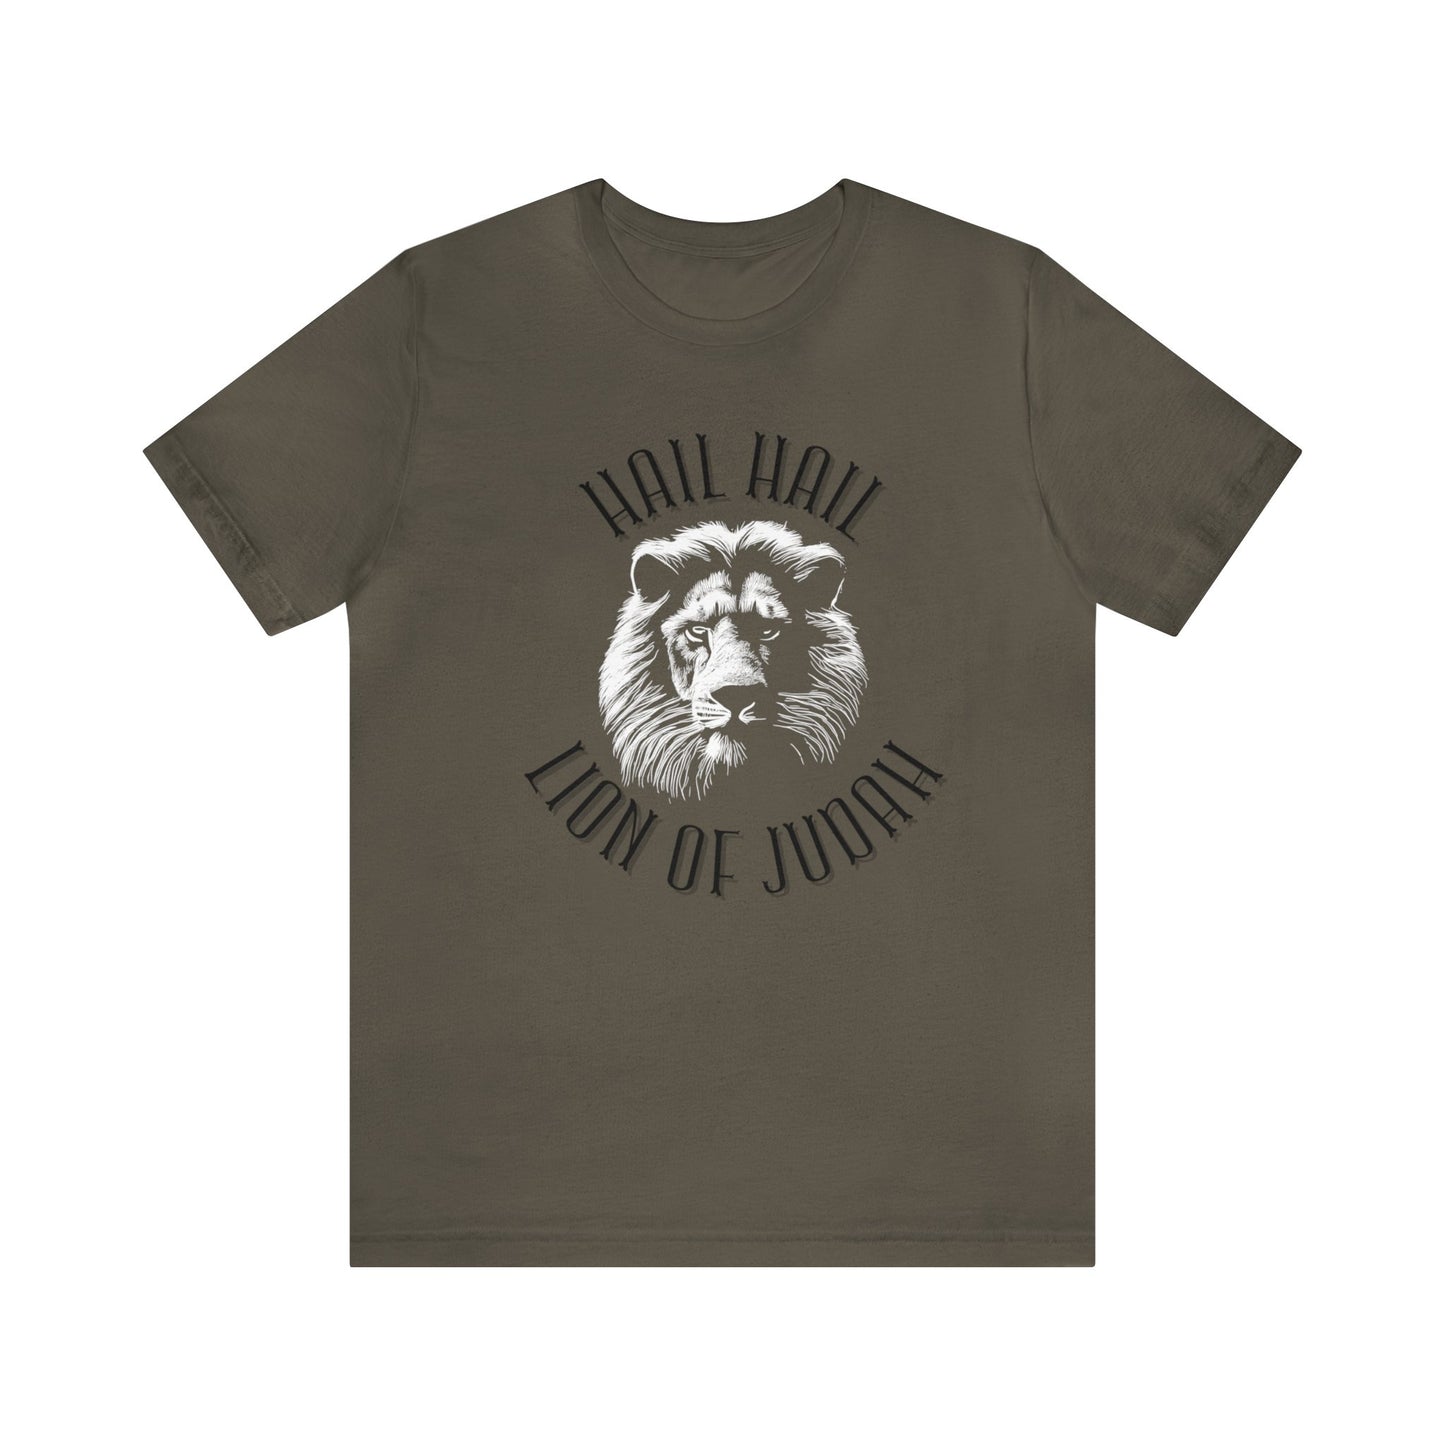 Hail Hail Lion of Judah Christian Jesus Shirt